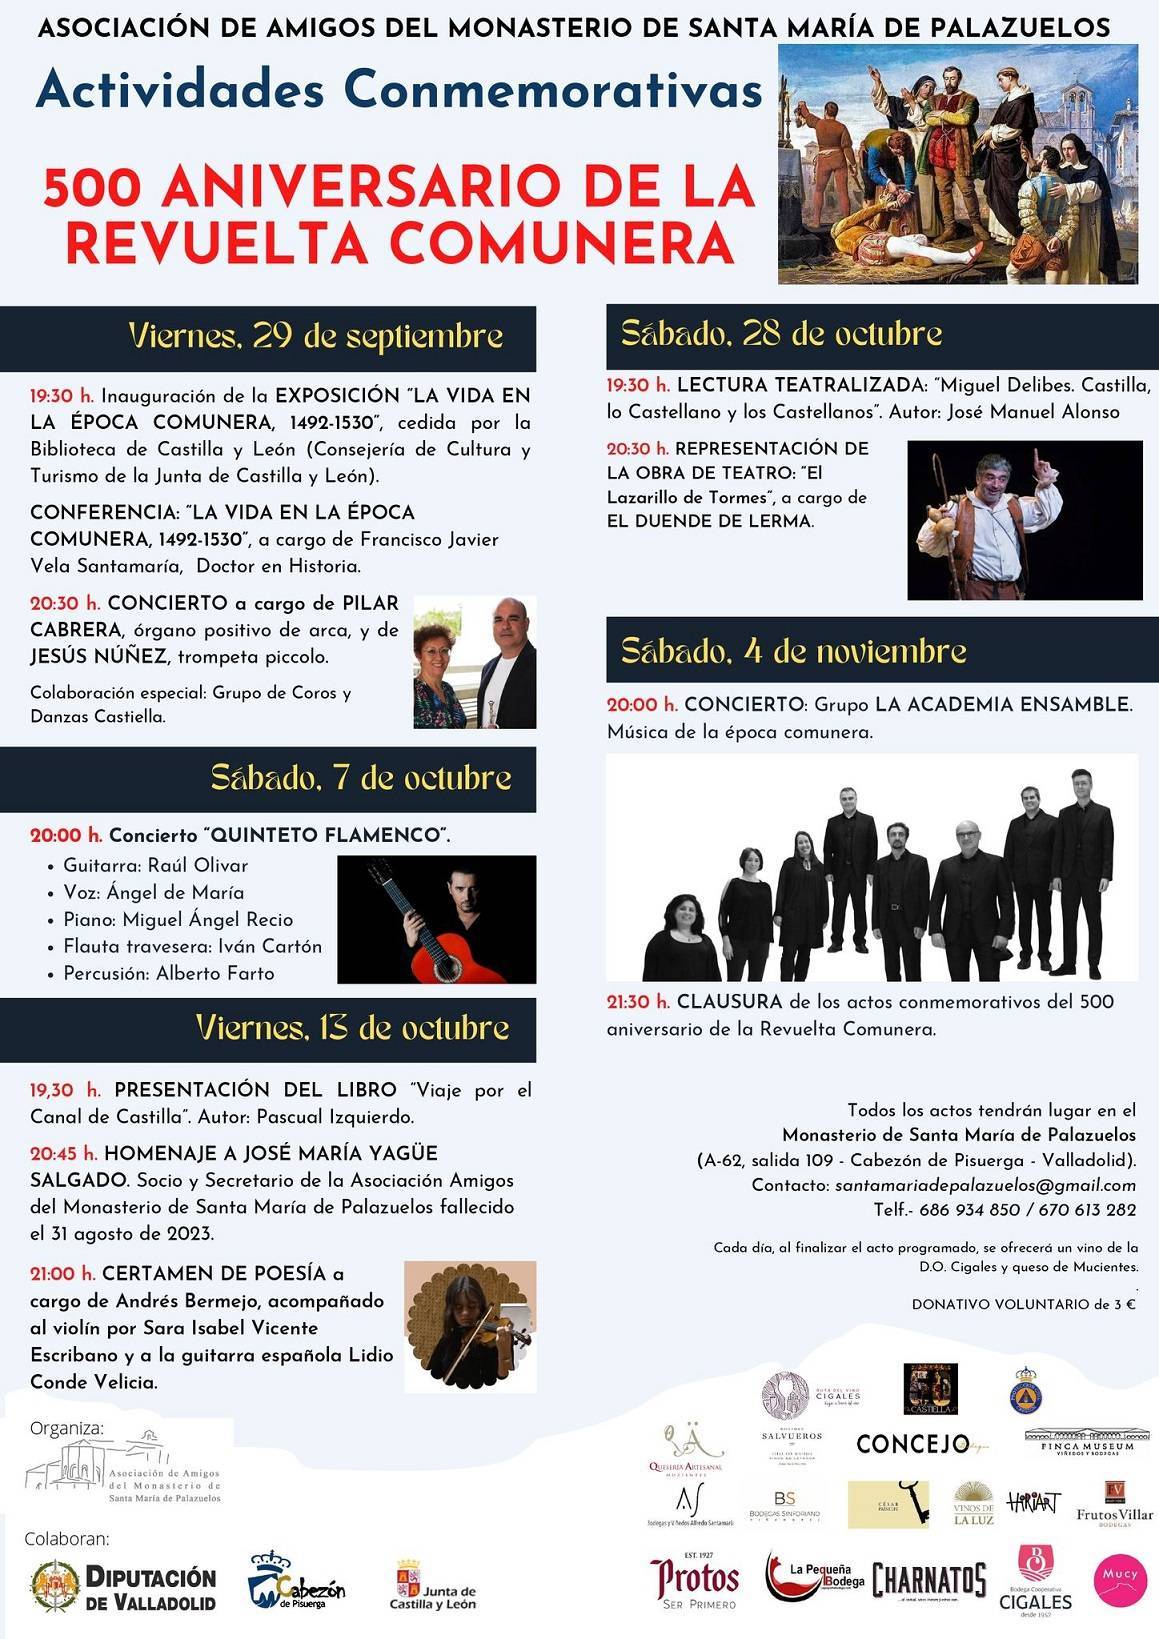 500 Aniversario de la Revuelta Comunera - Cabezón de Pisuerga (Valladolid)